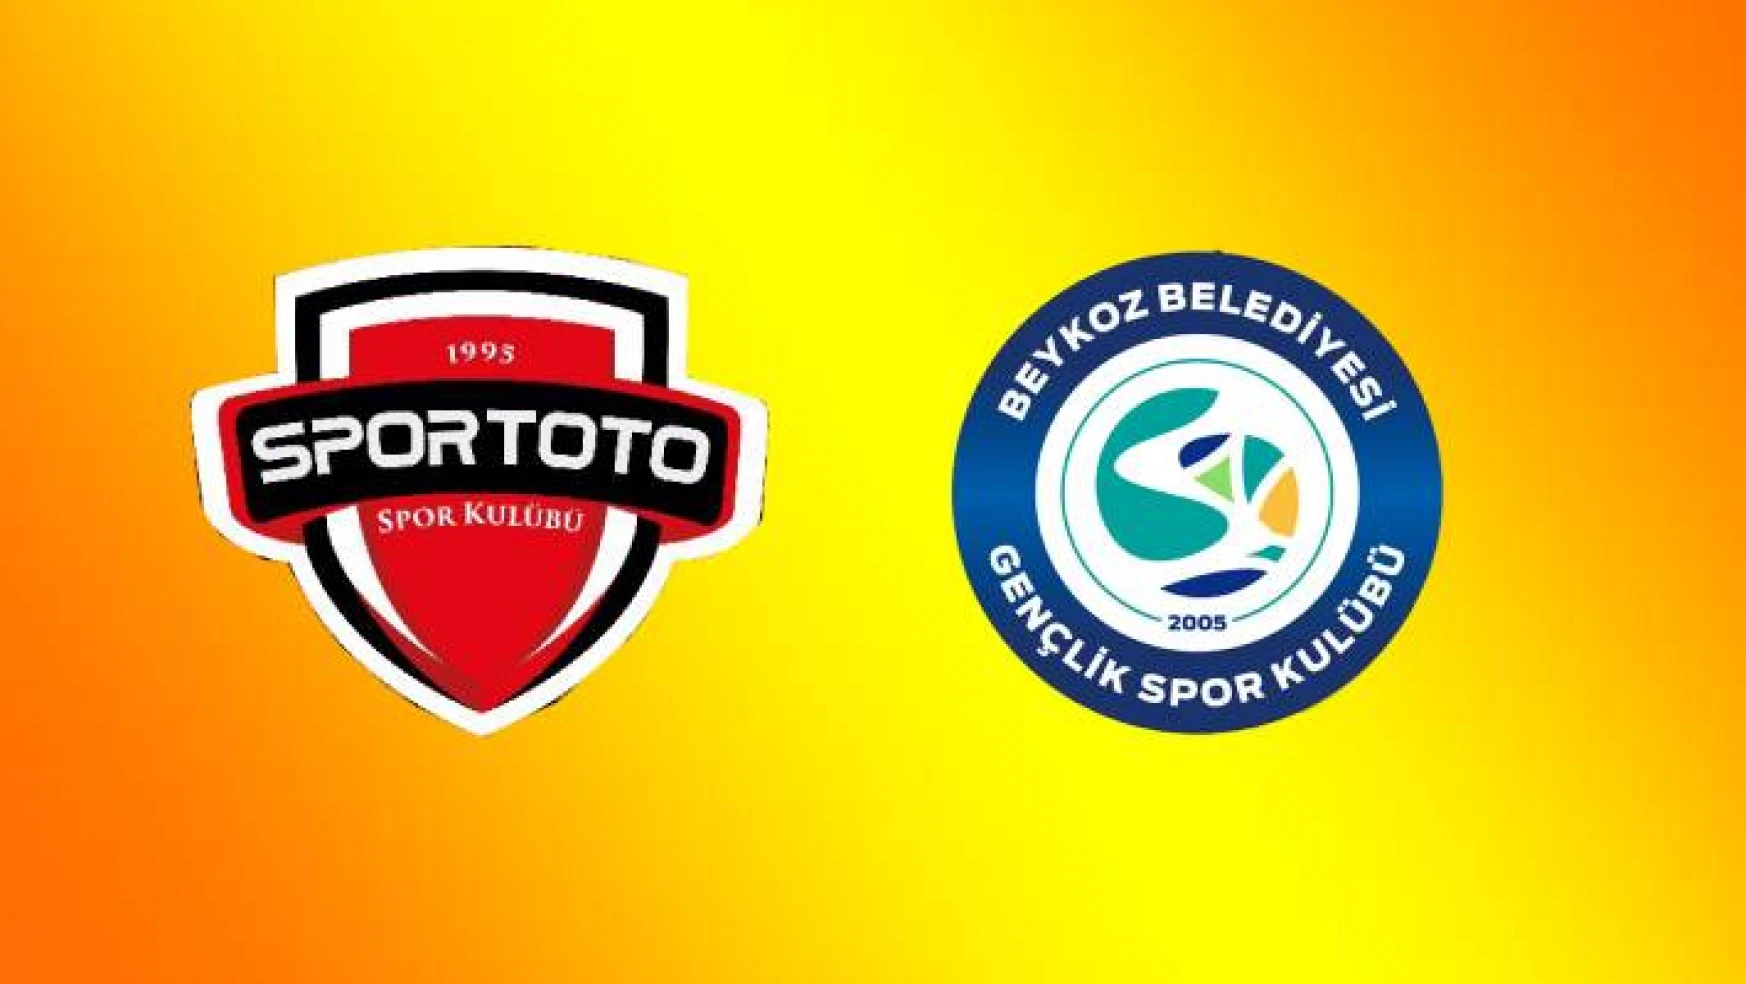 Spor Toto SK – Beykoz Belediyesi SK: 23-23